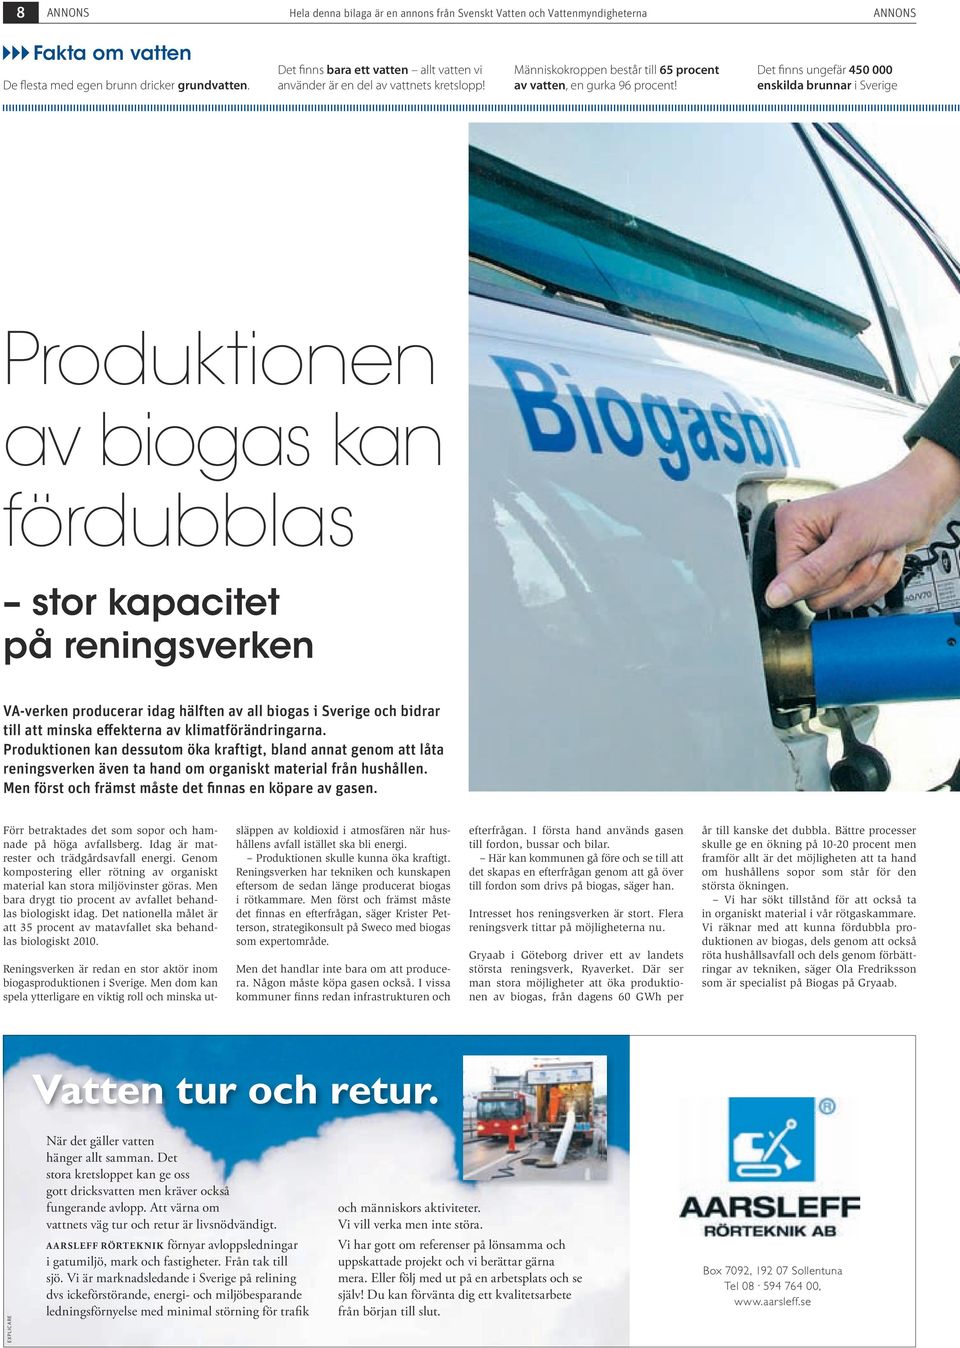 Det finns ungefär 450 000 enskilda brunnar i Sverige Produktionen av biogas kan fördubblas stor kapacitet på reningsverken VA-verken producerar idag hälften av all biogas i Sverige och bidrar till